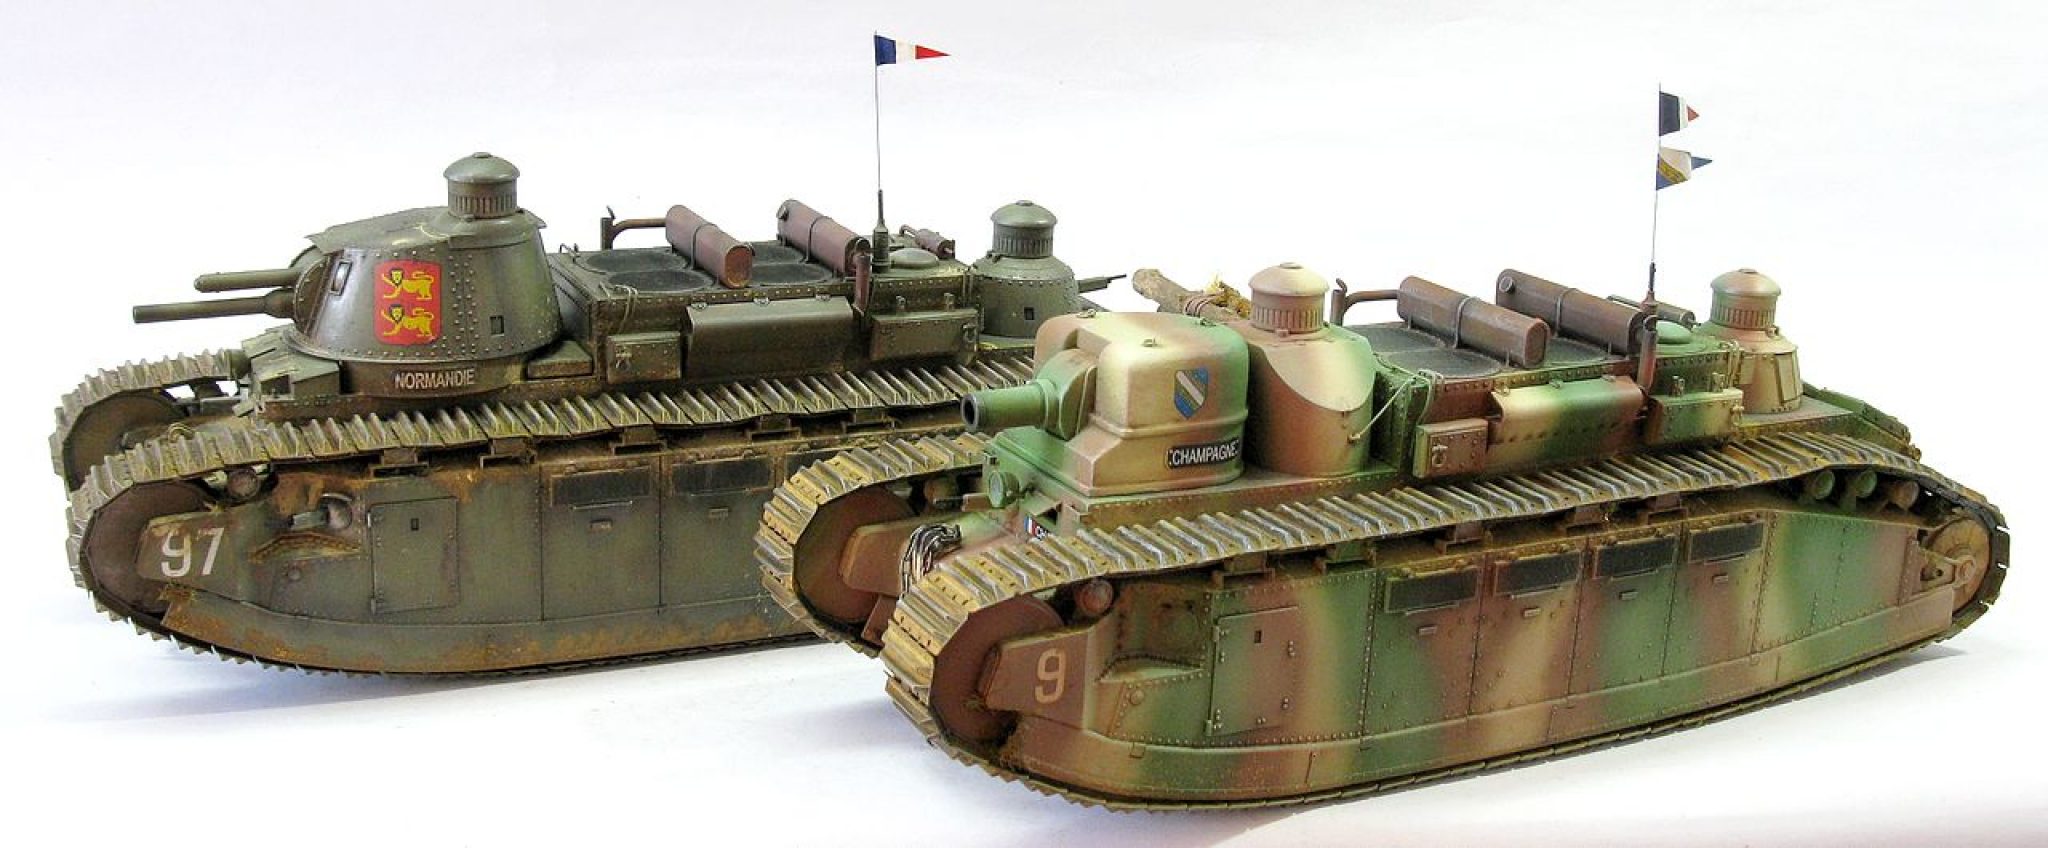 Чар 2 с. Танк FCM 2с. Танк Char 2c bis. Французский танк FCM 2c. Французский танк 2с bis.